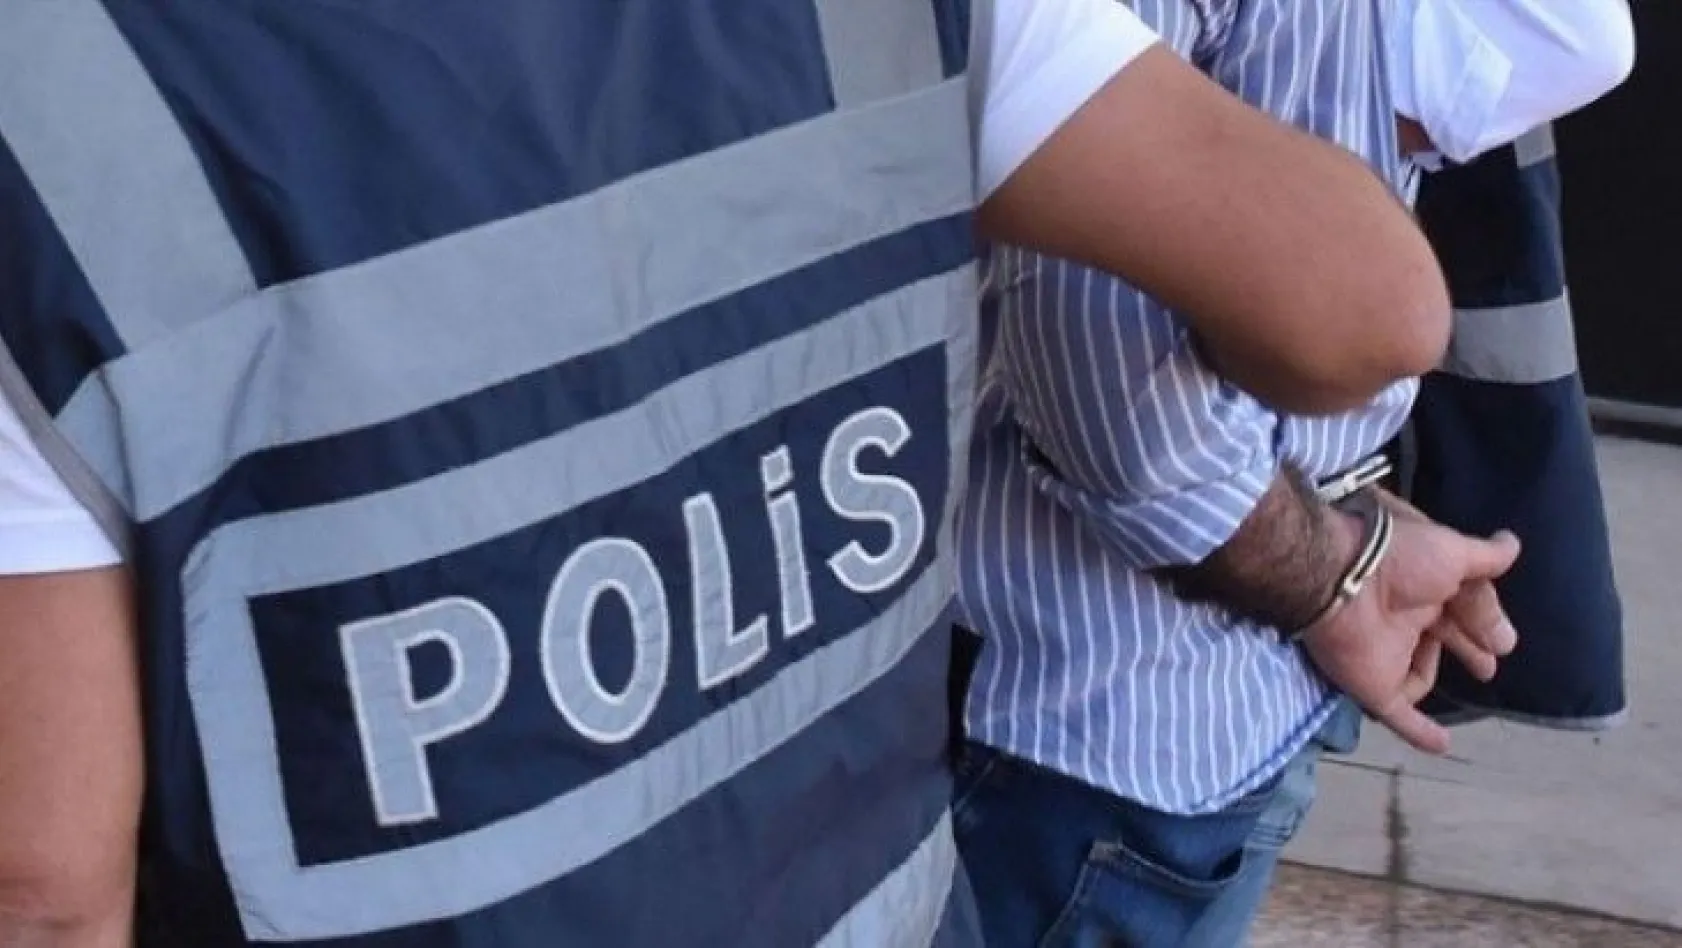 Elazığ'da uyuşturucu ile mücadele:2 tutuklama